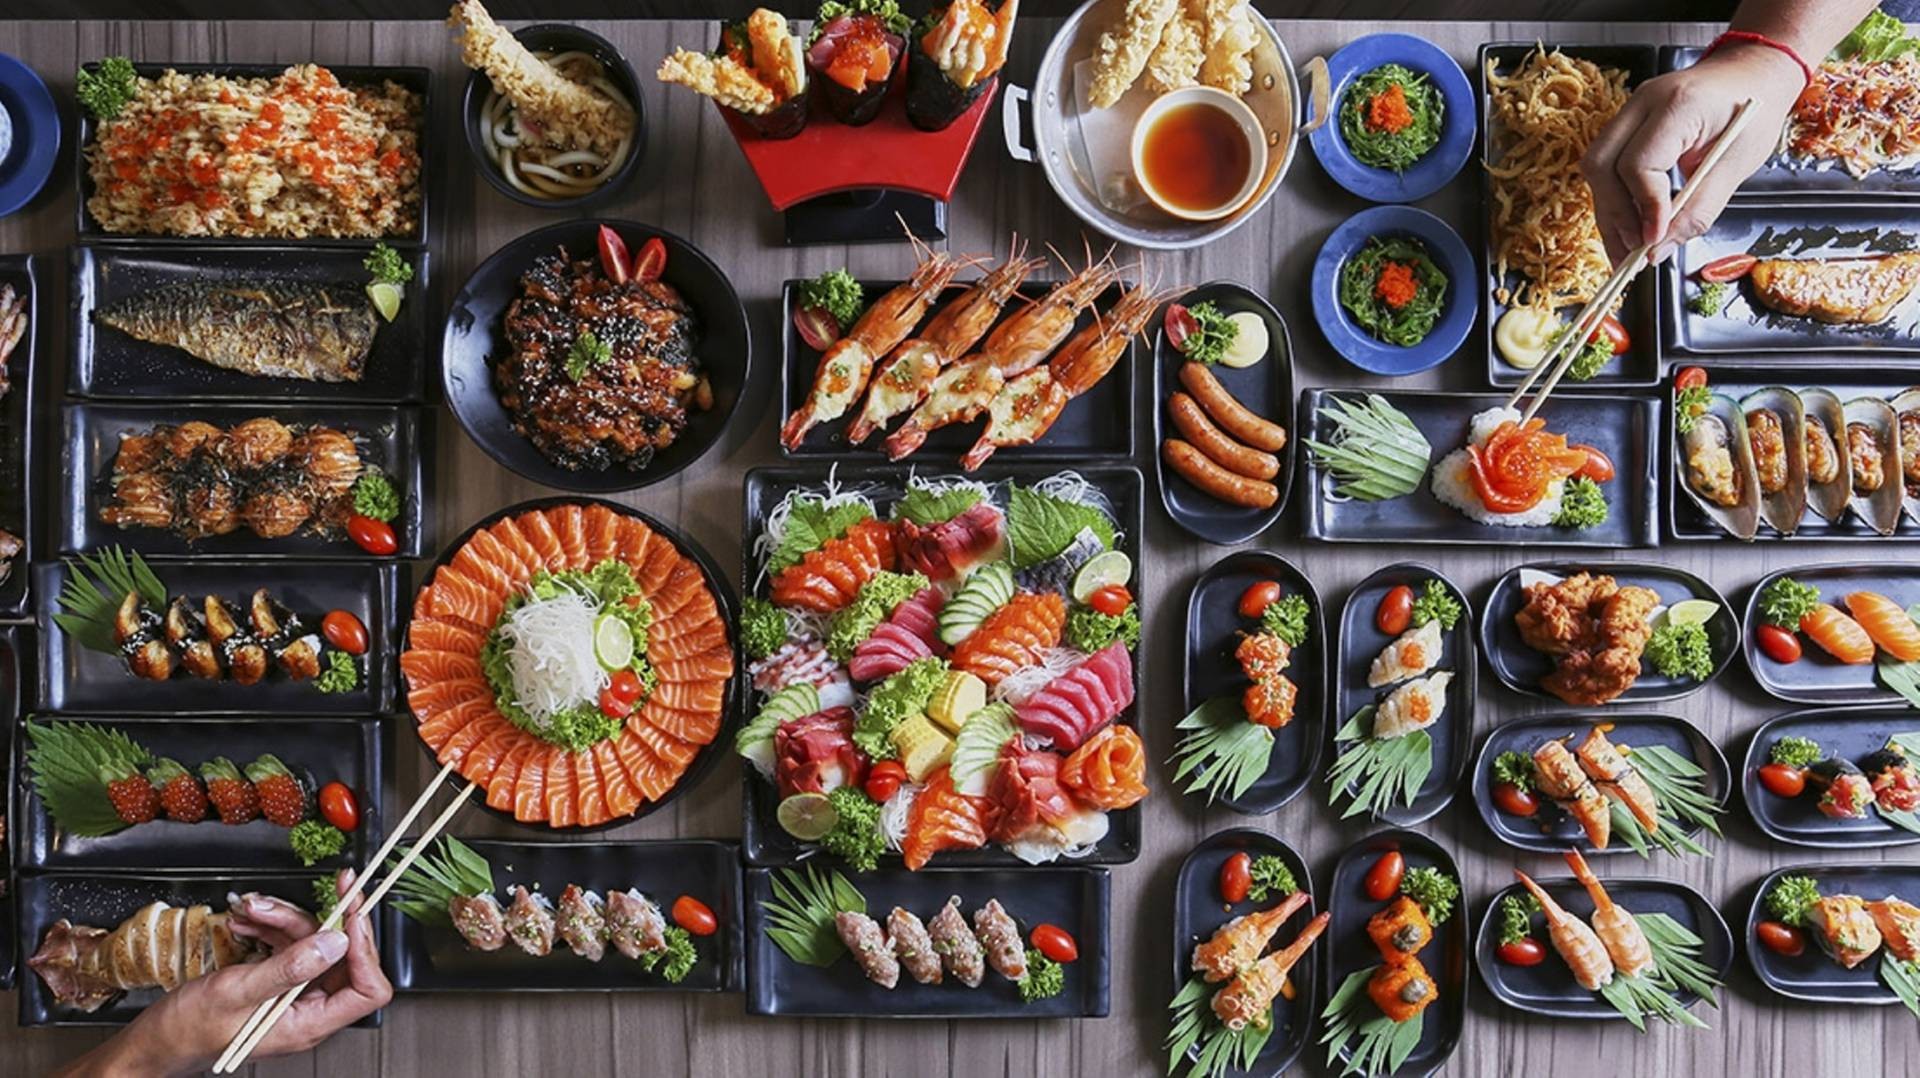 รีวิว] ร้าน One Peace Sushi Buffet | เมนูแนะนำ รูปภาพ ราคา